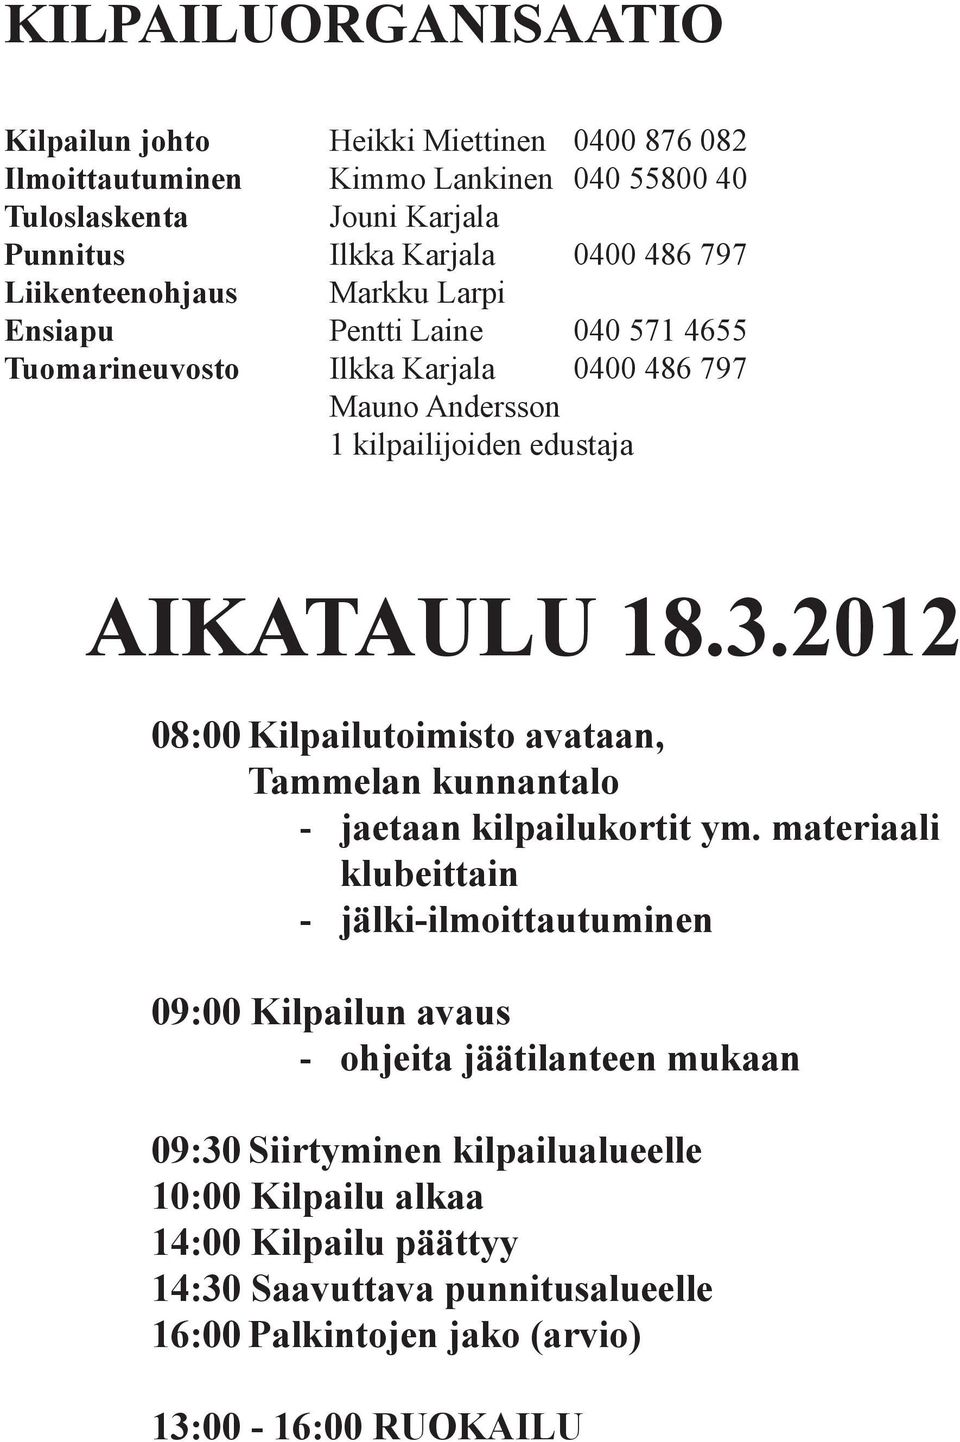 2012 08:00 Kilpailutoimisto avataan, Tammelan kunnantalo - jaetaan kilpailukortit ym.